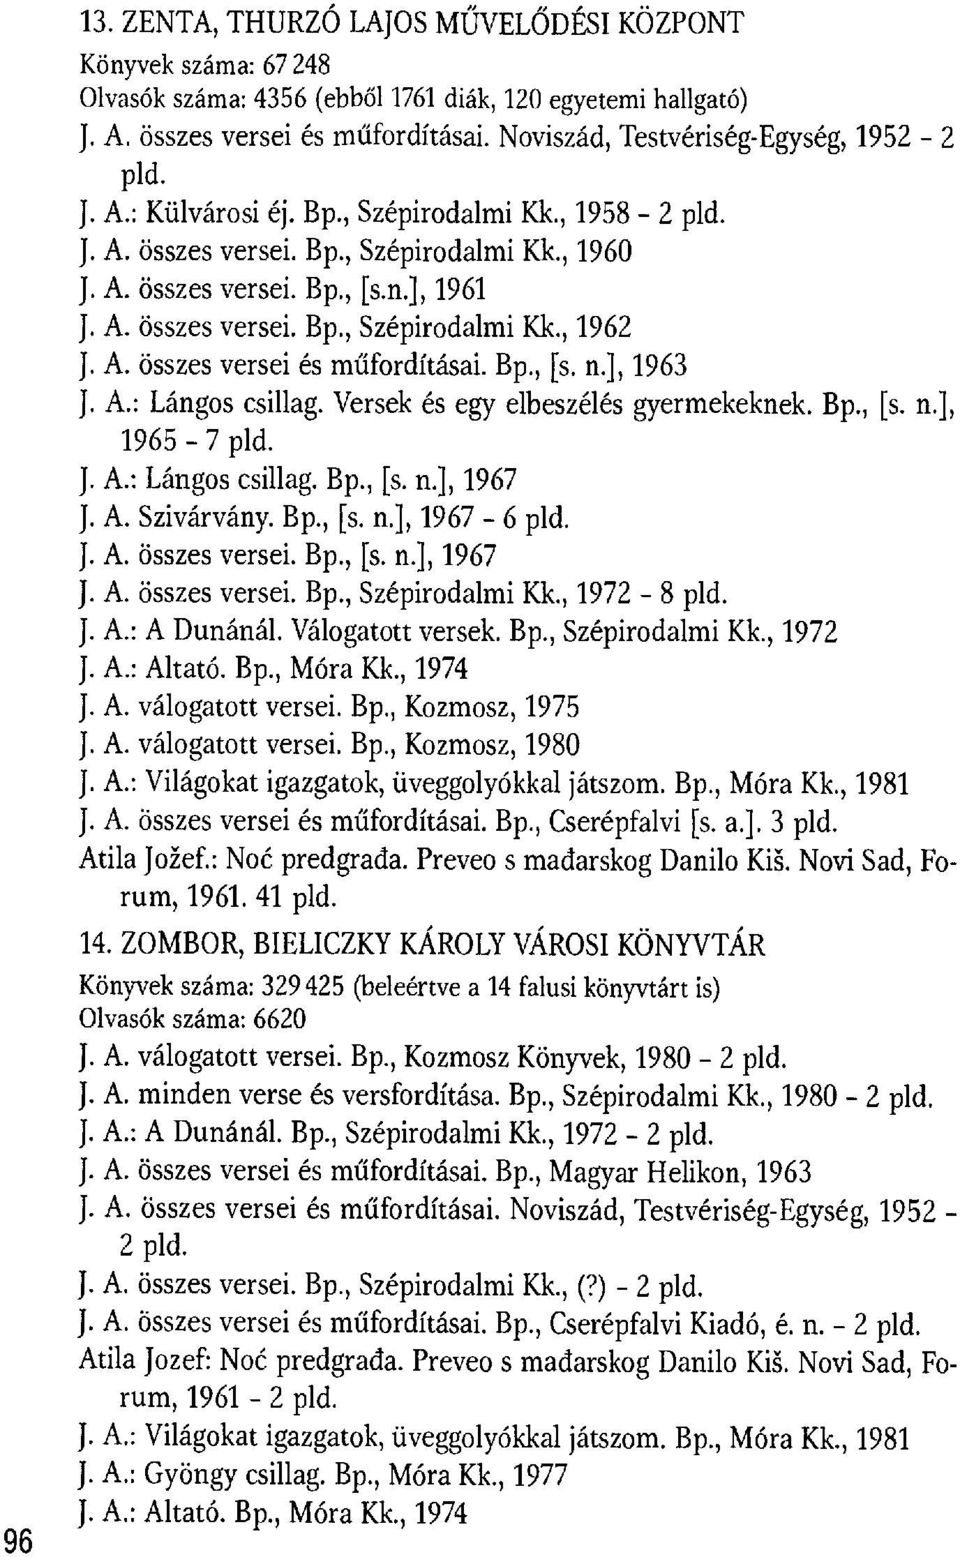 Versek és egy elbeszélés gyermekeknek. Bp., [s. n.], 1965-7 pld. J. A.: Lángos csillag. Bp., [s. n.], 1967 J. A. Szivárvány. Bp., [s. n.], 1967-6 pld. J. A. összes versei. Bp., [s. n.], 1967-8 pld. J. A.: A Dunánál.